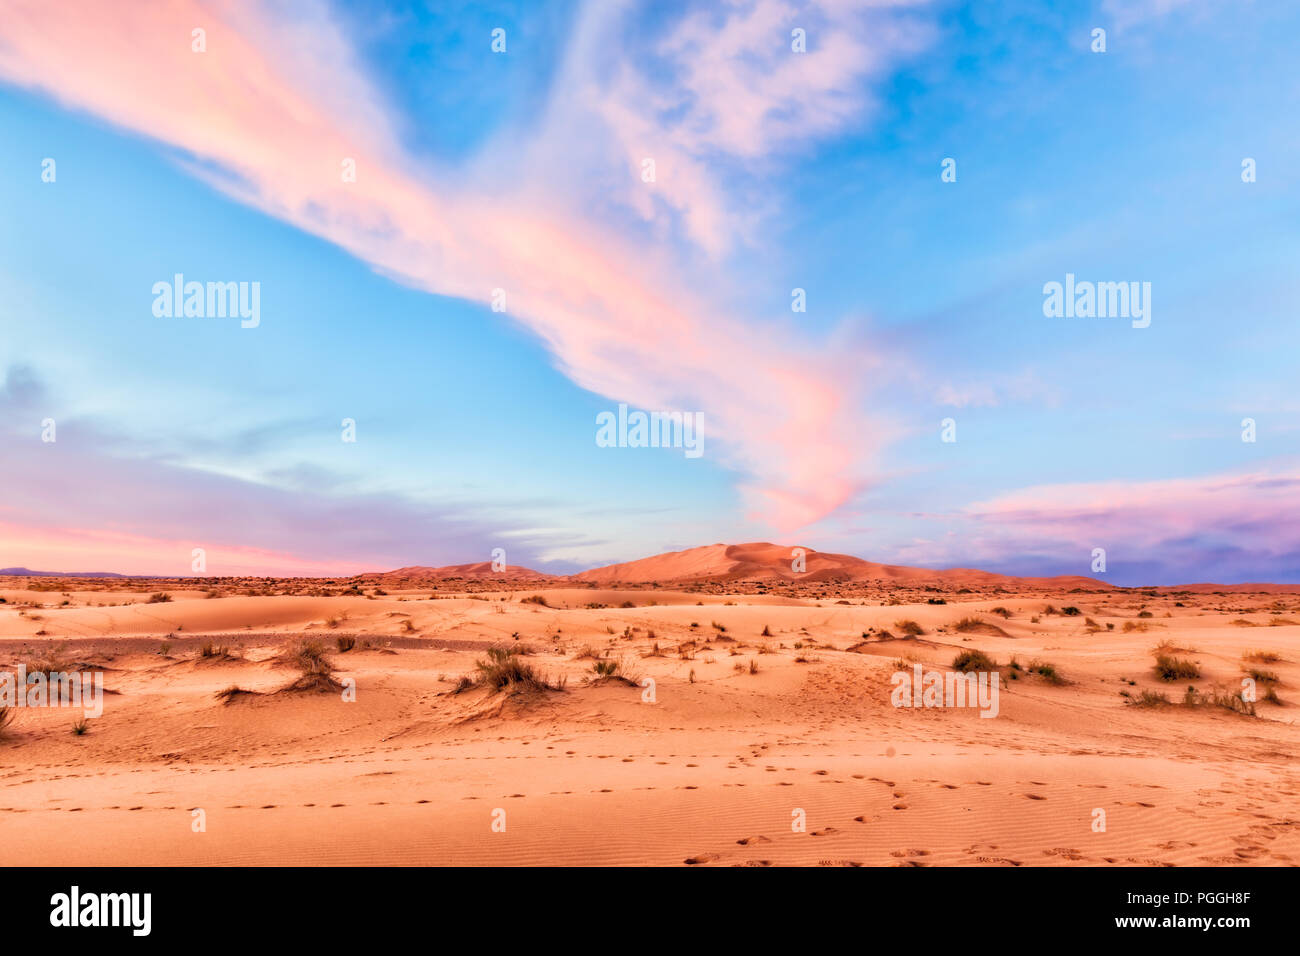 Rosa Wüste Sahara Sonnenaufgang über grosse orange Sanddünen. Spektakuläre wolken Streifen über die Pastell-blaue Himmel. Lage: Marokko Stockfoto